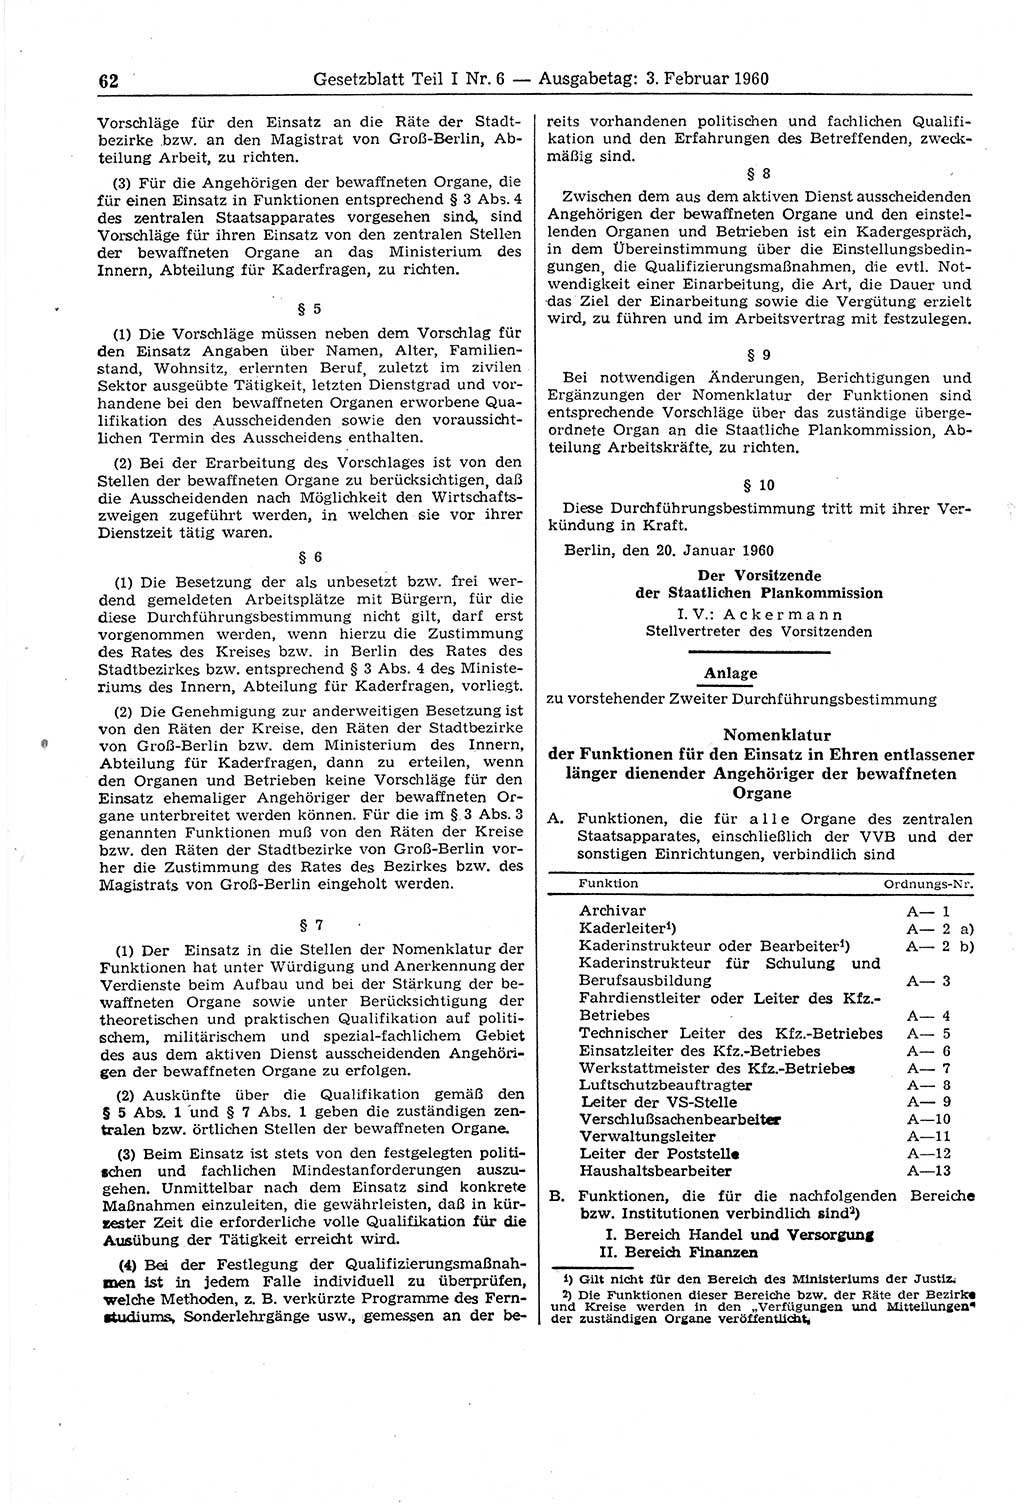 Gesetzblatt (GBl.) der Deutschen Demokratischen Republik (DDR) Teil Ⅰ 1960, Seite 62 (GBl. DDR Ⅰ 1960, S. 62)